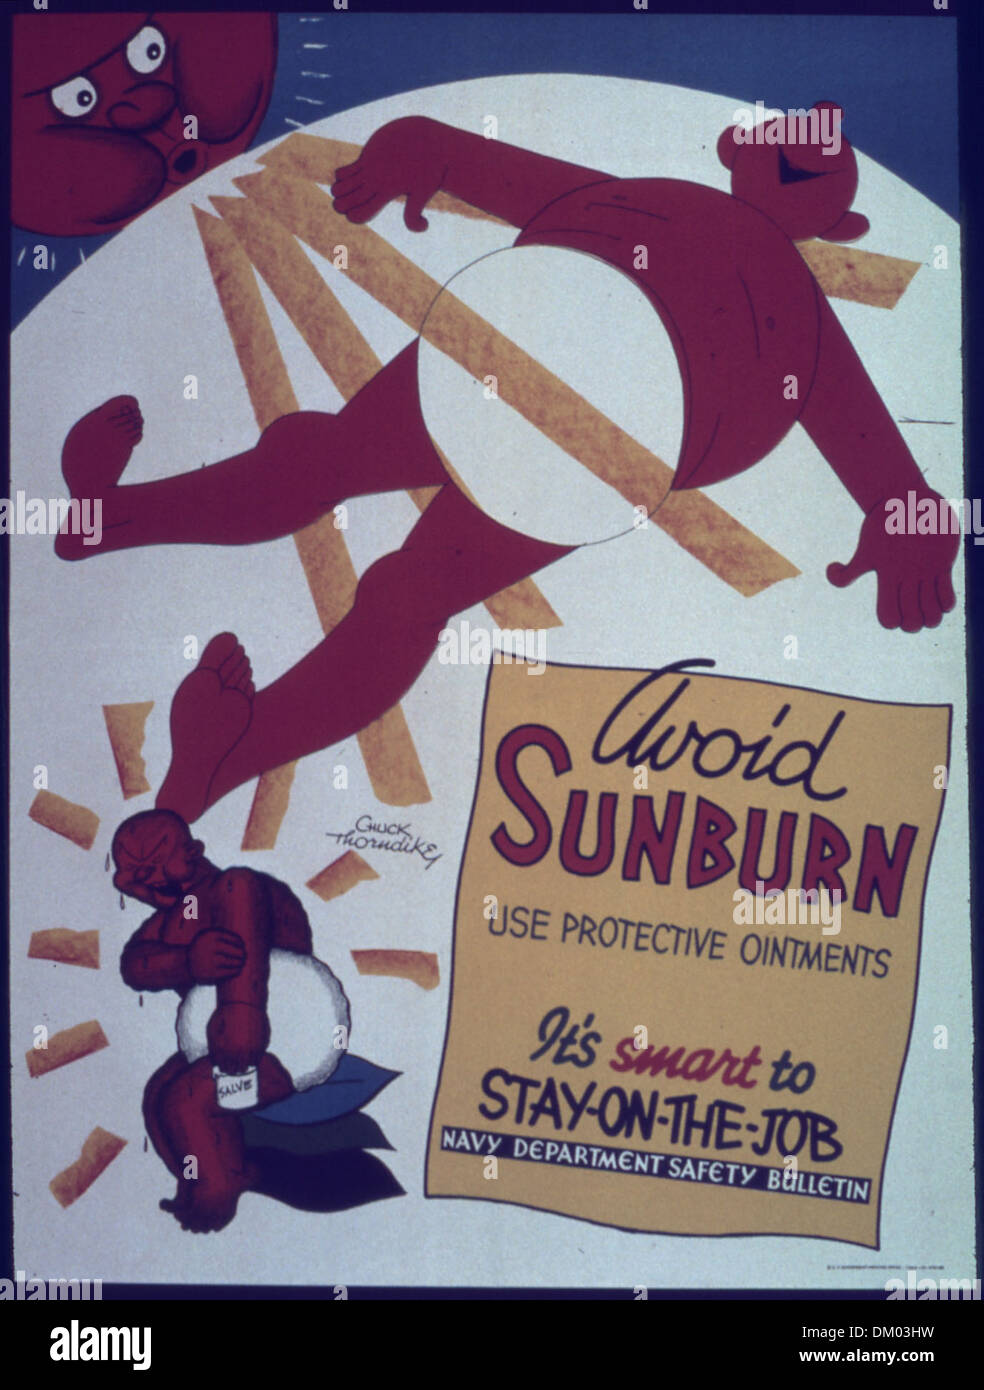 'Avoid sunburn' 513898 Stock Photo